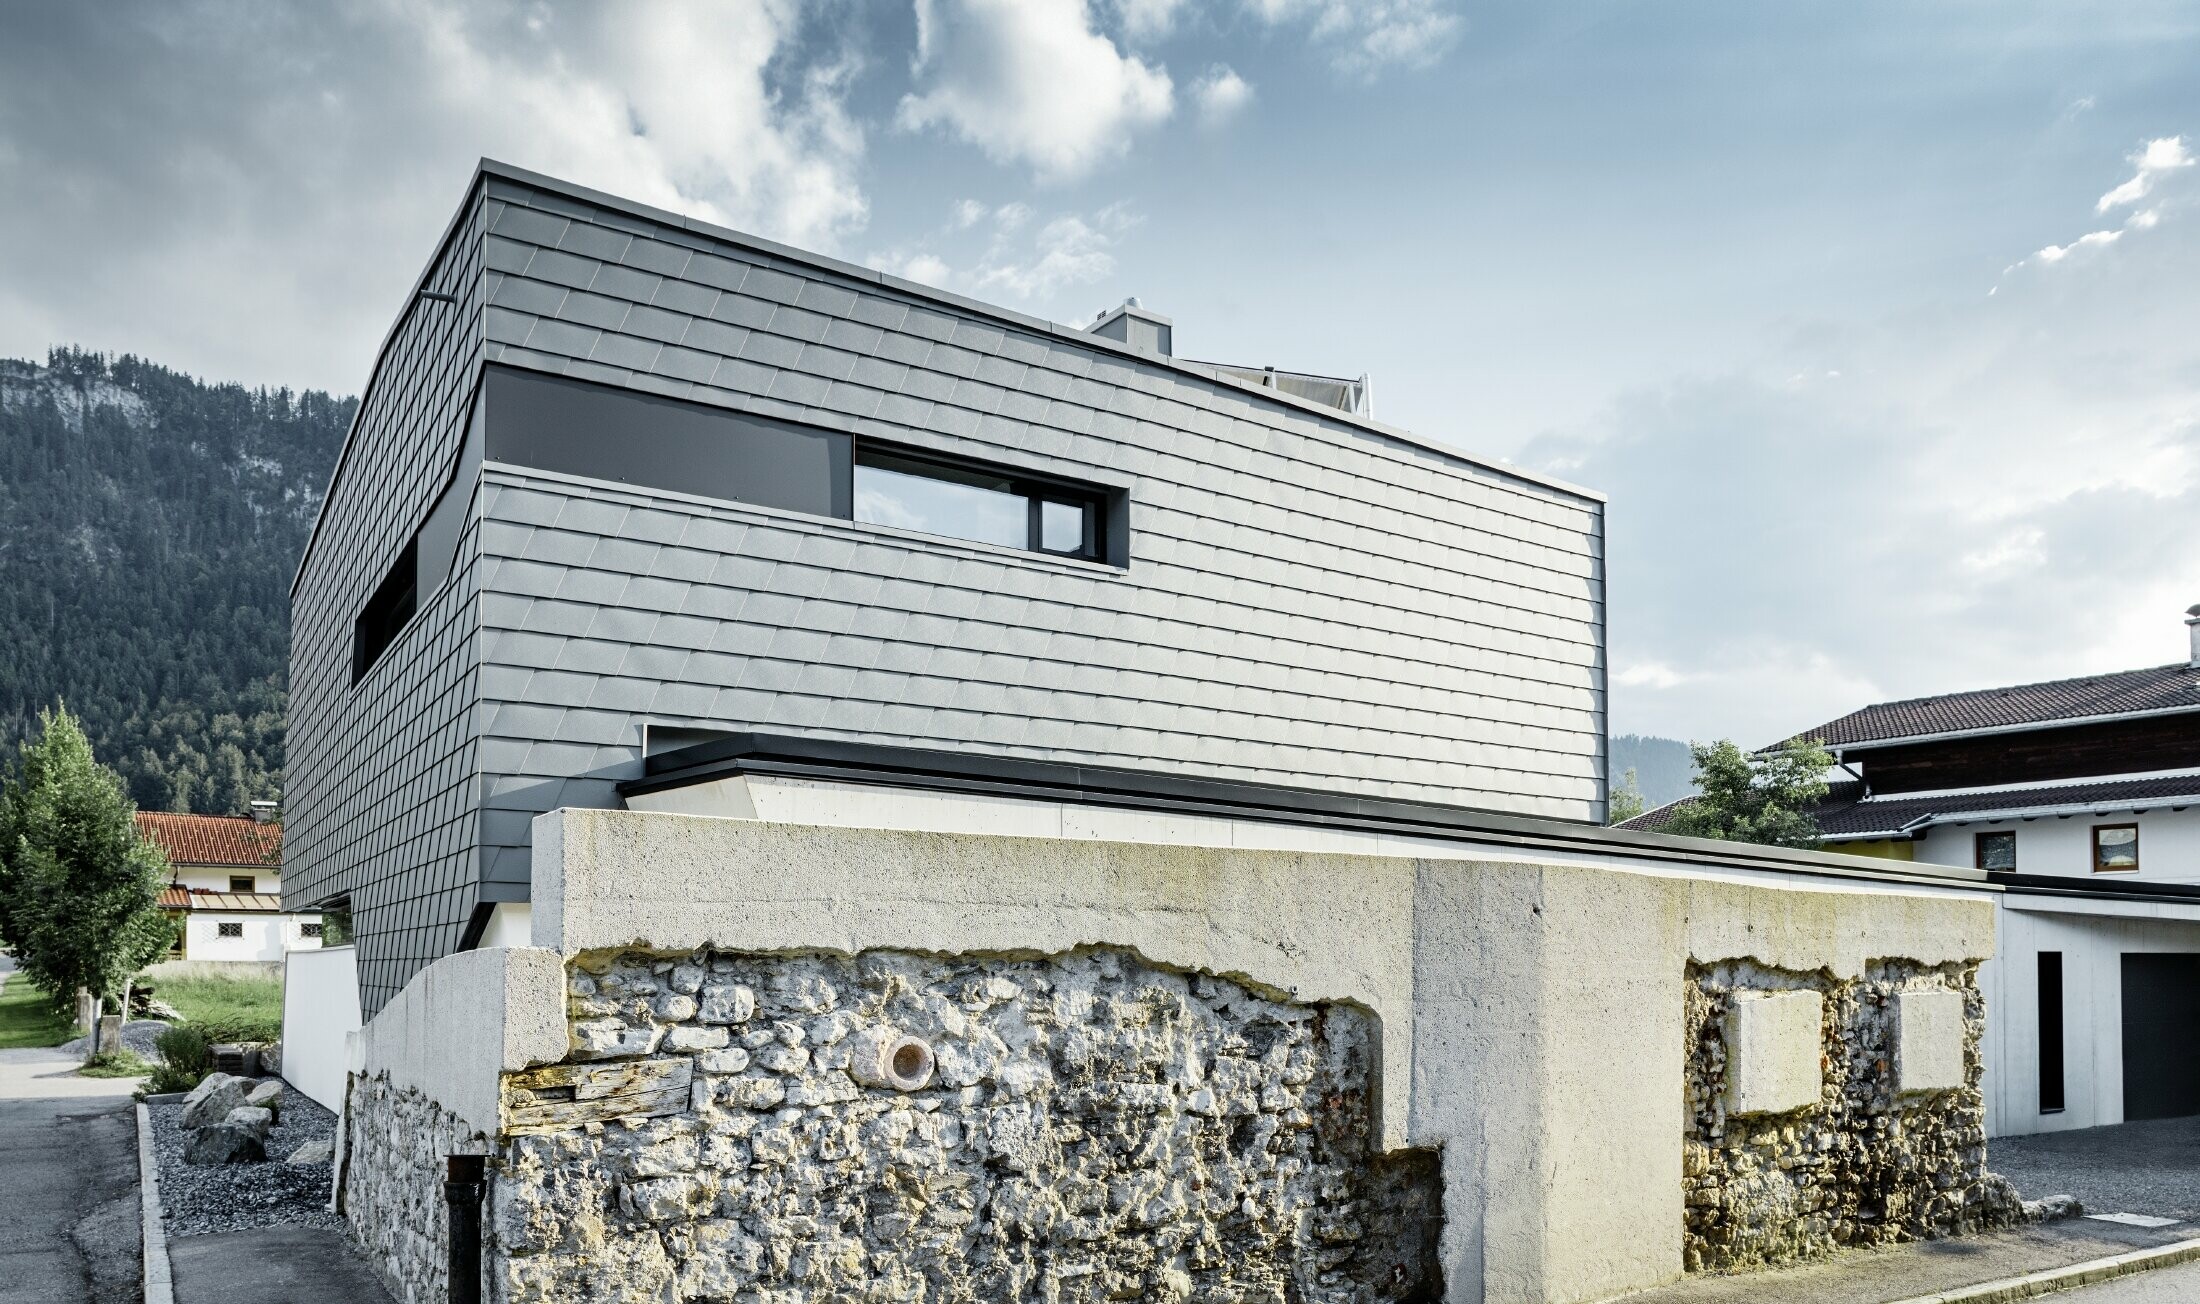 Moderný rodinný dom s plochou strechou, veľkými oknami a šindľovou fasádou v svetlošedom hliníku od firmy PREFA